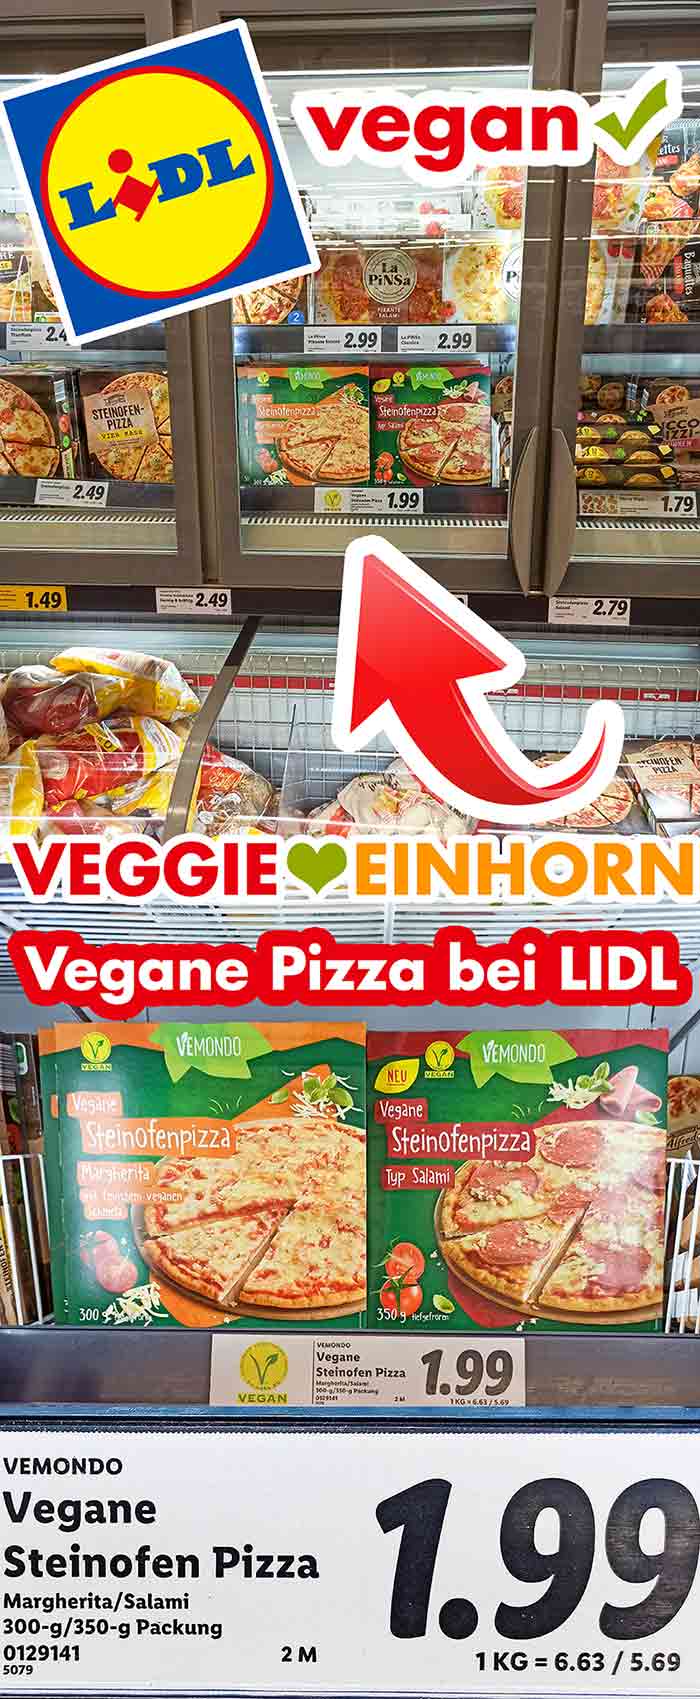 Vegane Pizzen im Tiefkühlregal bei Lidl